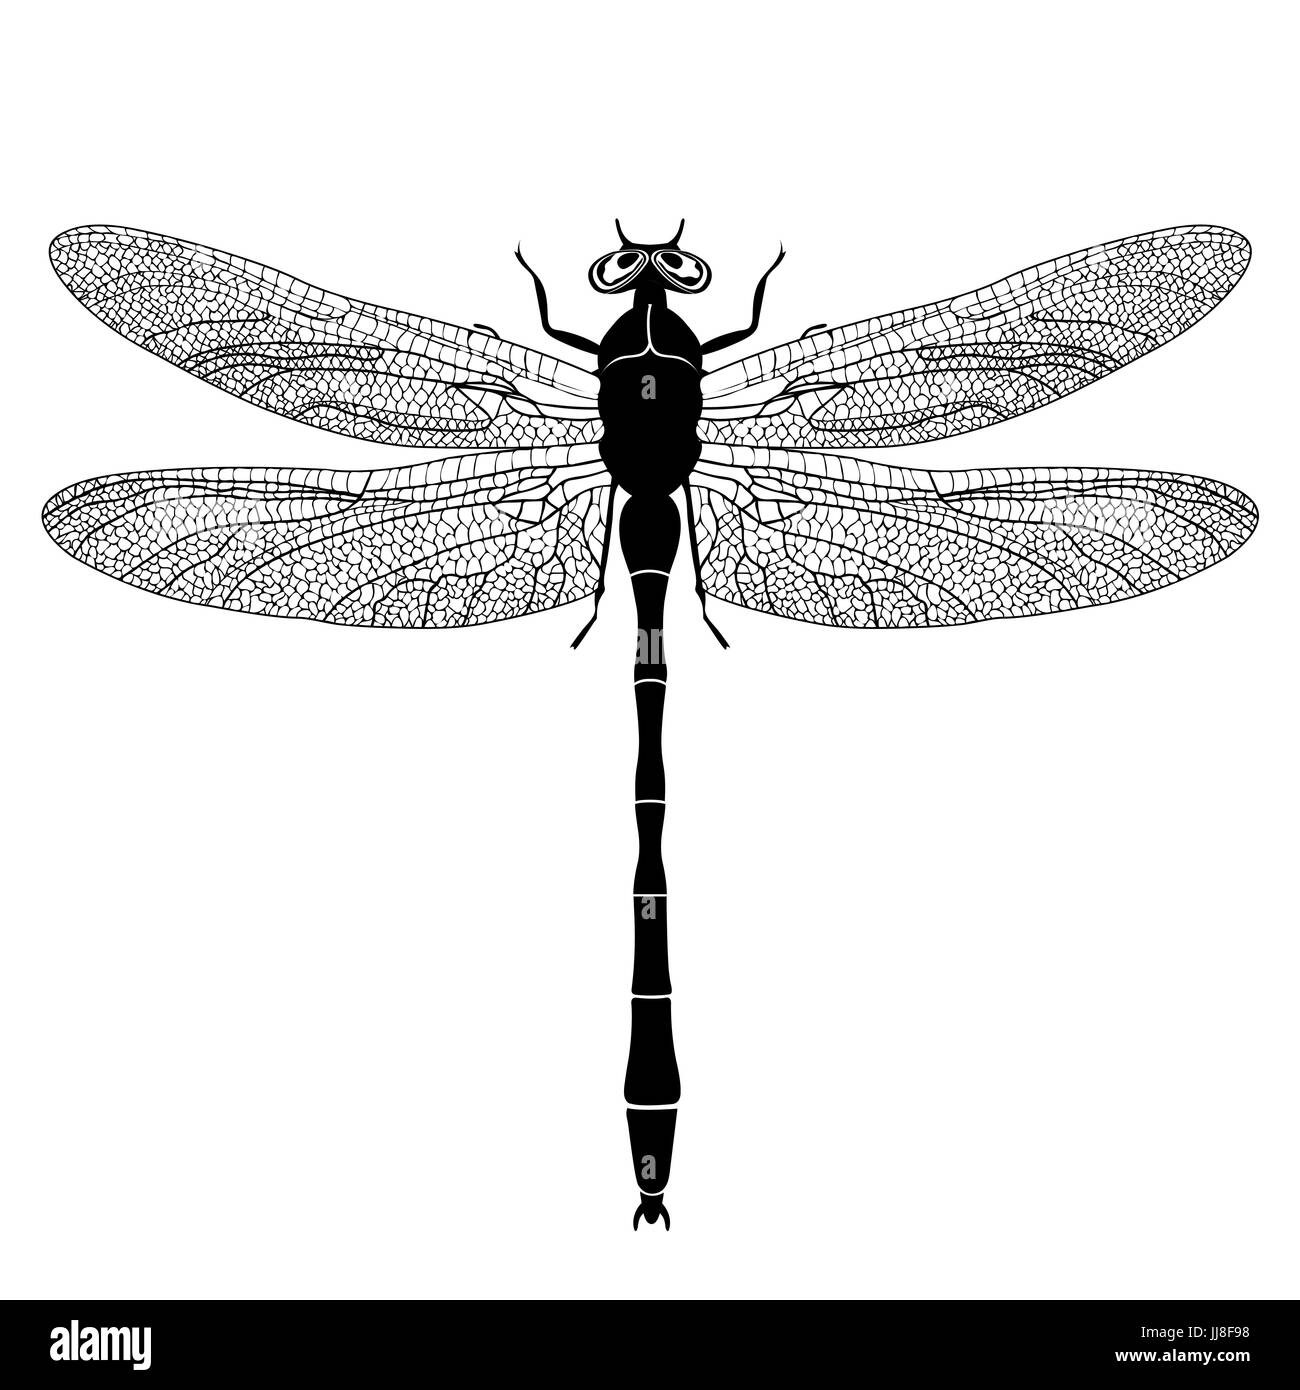 Libelle-Blick von oben, schwarze und weiße monochrome Abbildung, isoliert auf weißem Hintergrund, Vektor Insekt, Malbuch, Banner, Karte, Plakat, Stock Vektor